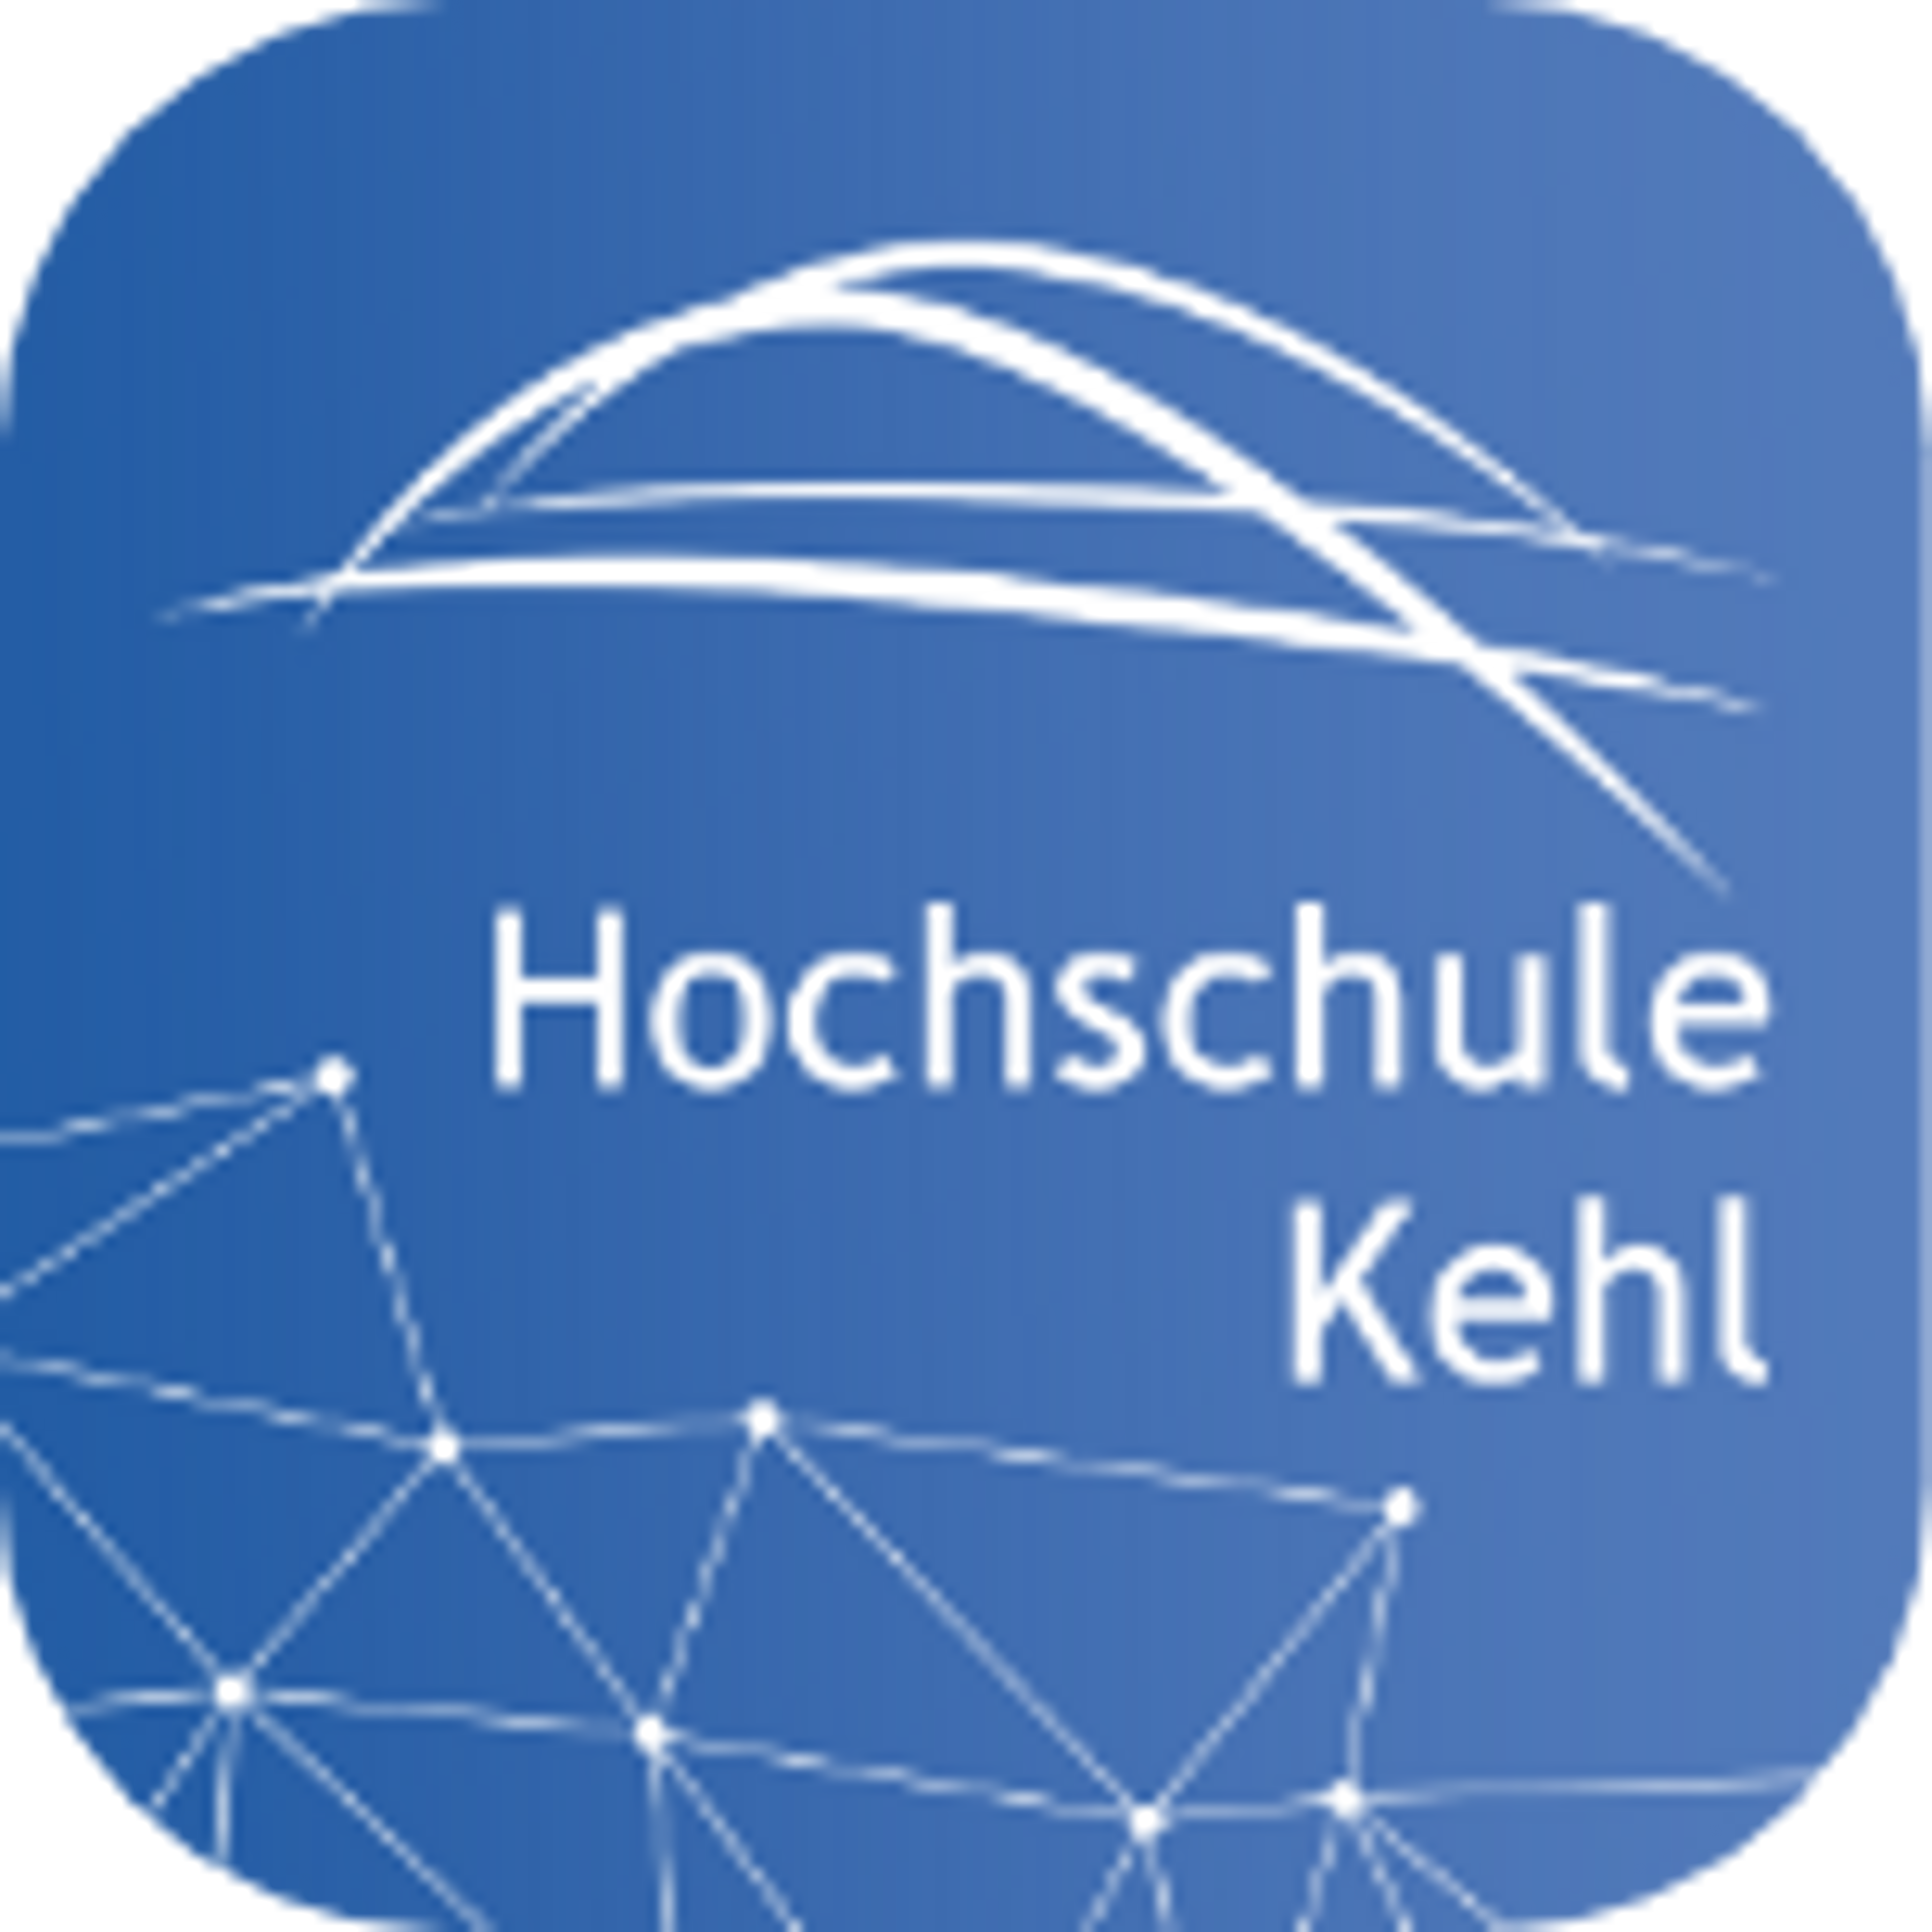 Hochschule Kehl